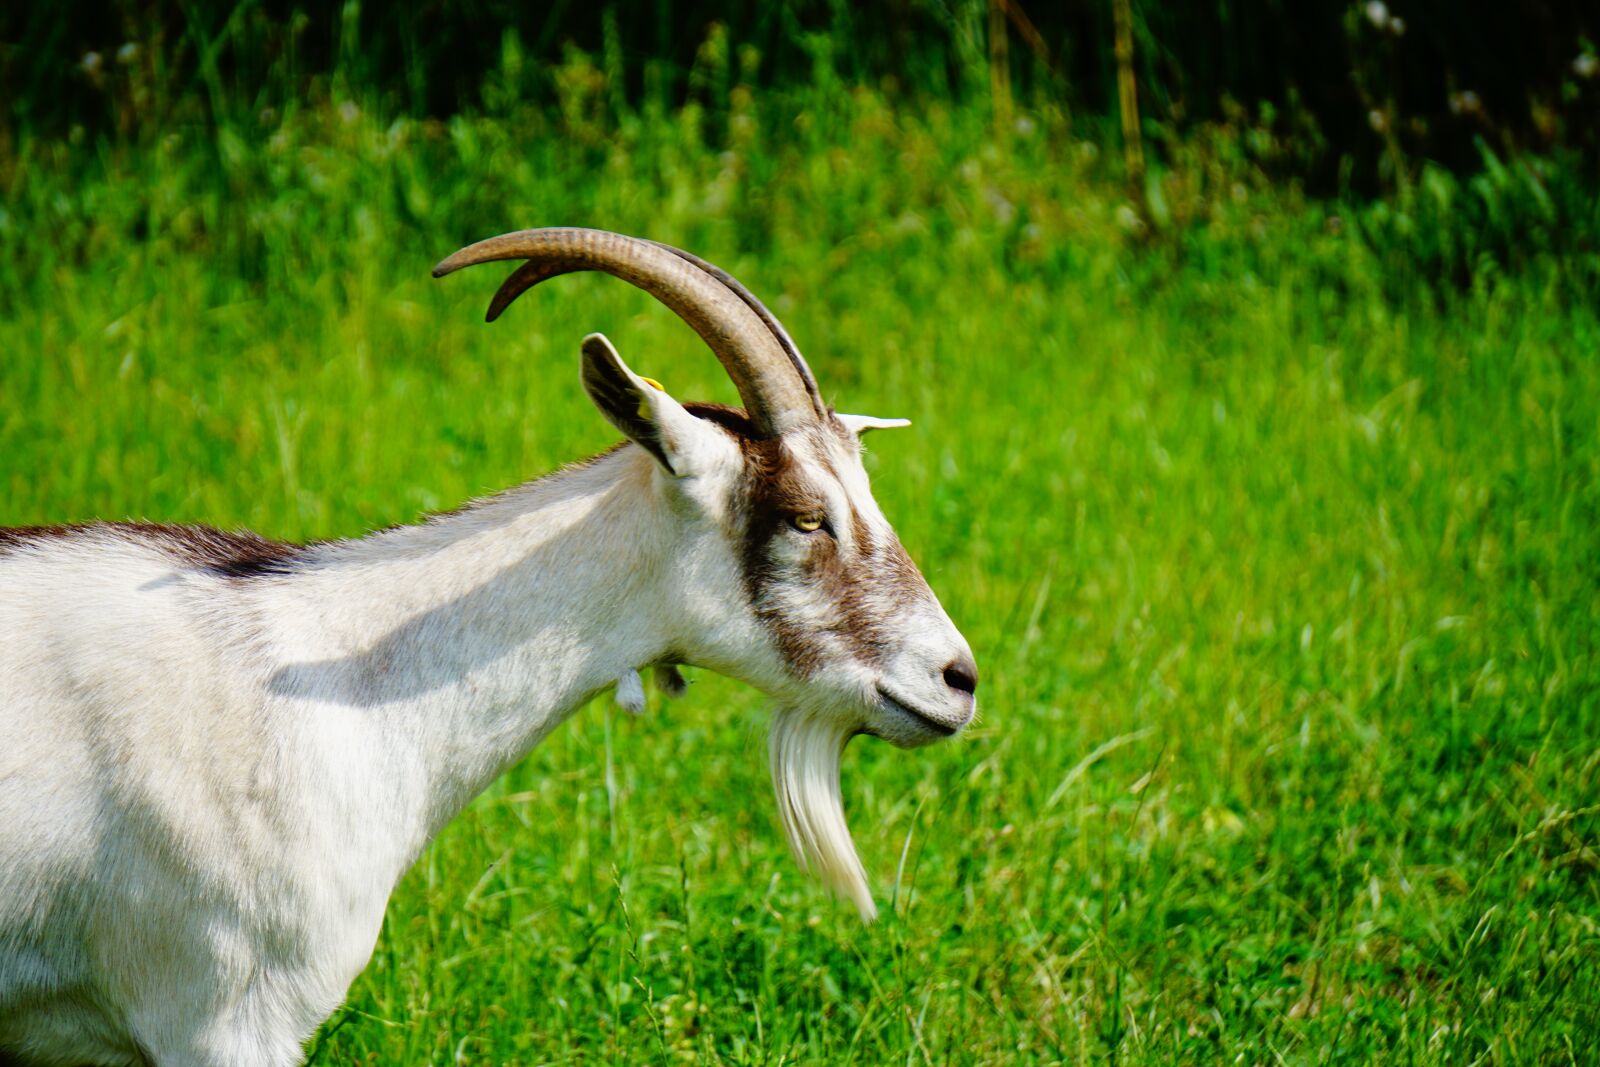 Sony a6000 + Sony E 55-210mm F4.5-6.3 OSS sample photo. Goat, farm, horns photography